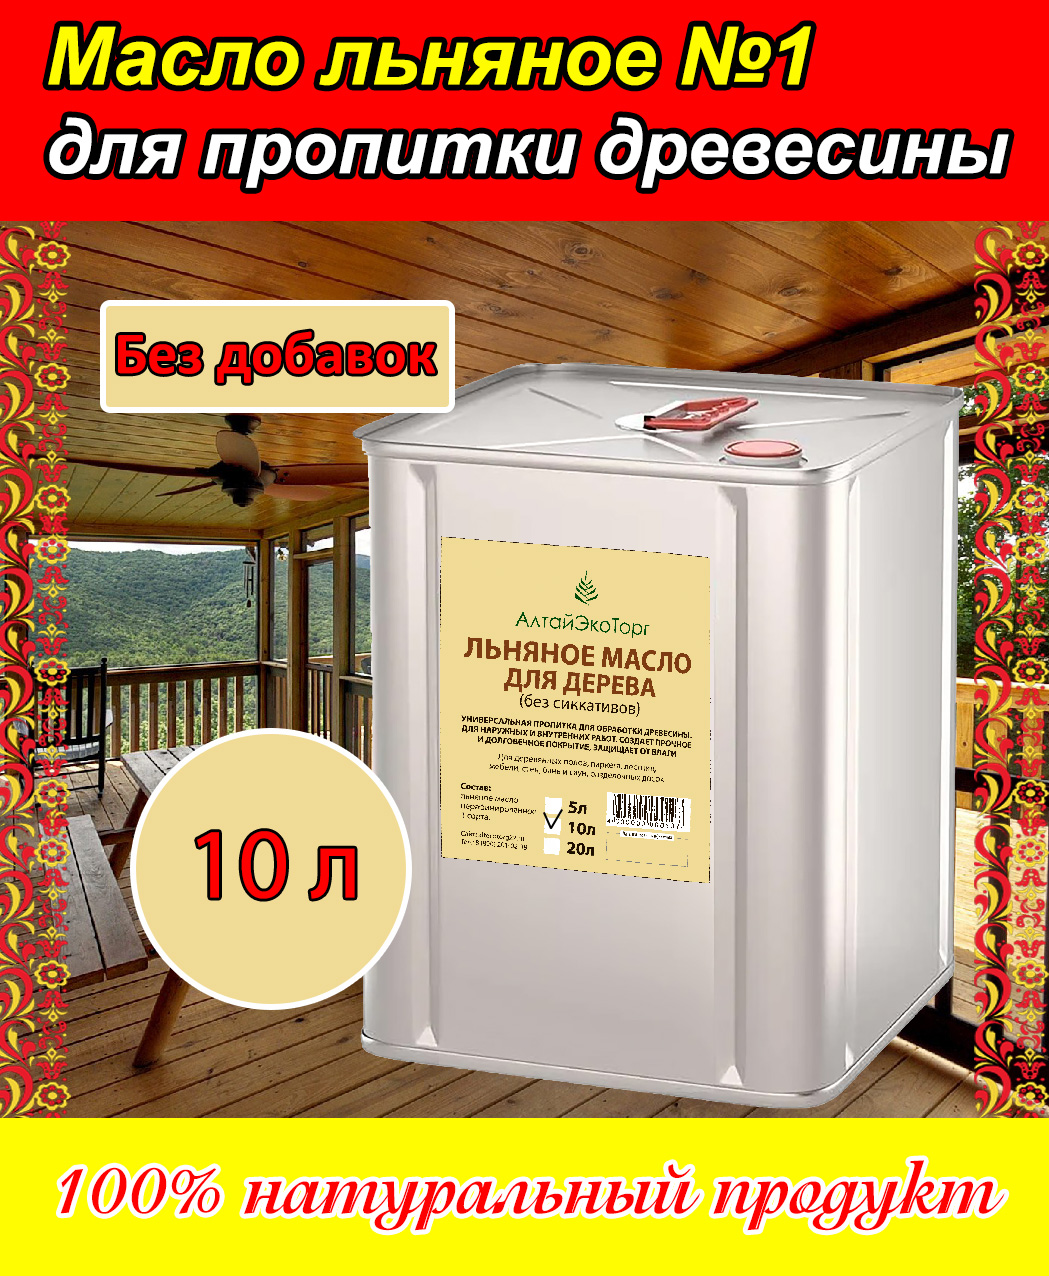 льняное масло для древесины простоколор Масло льняное АлтайЭкоТорг для пропитки древесины, 10 литров